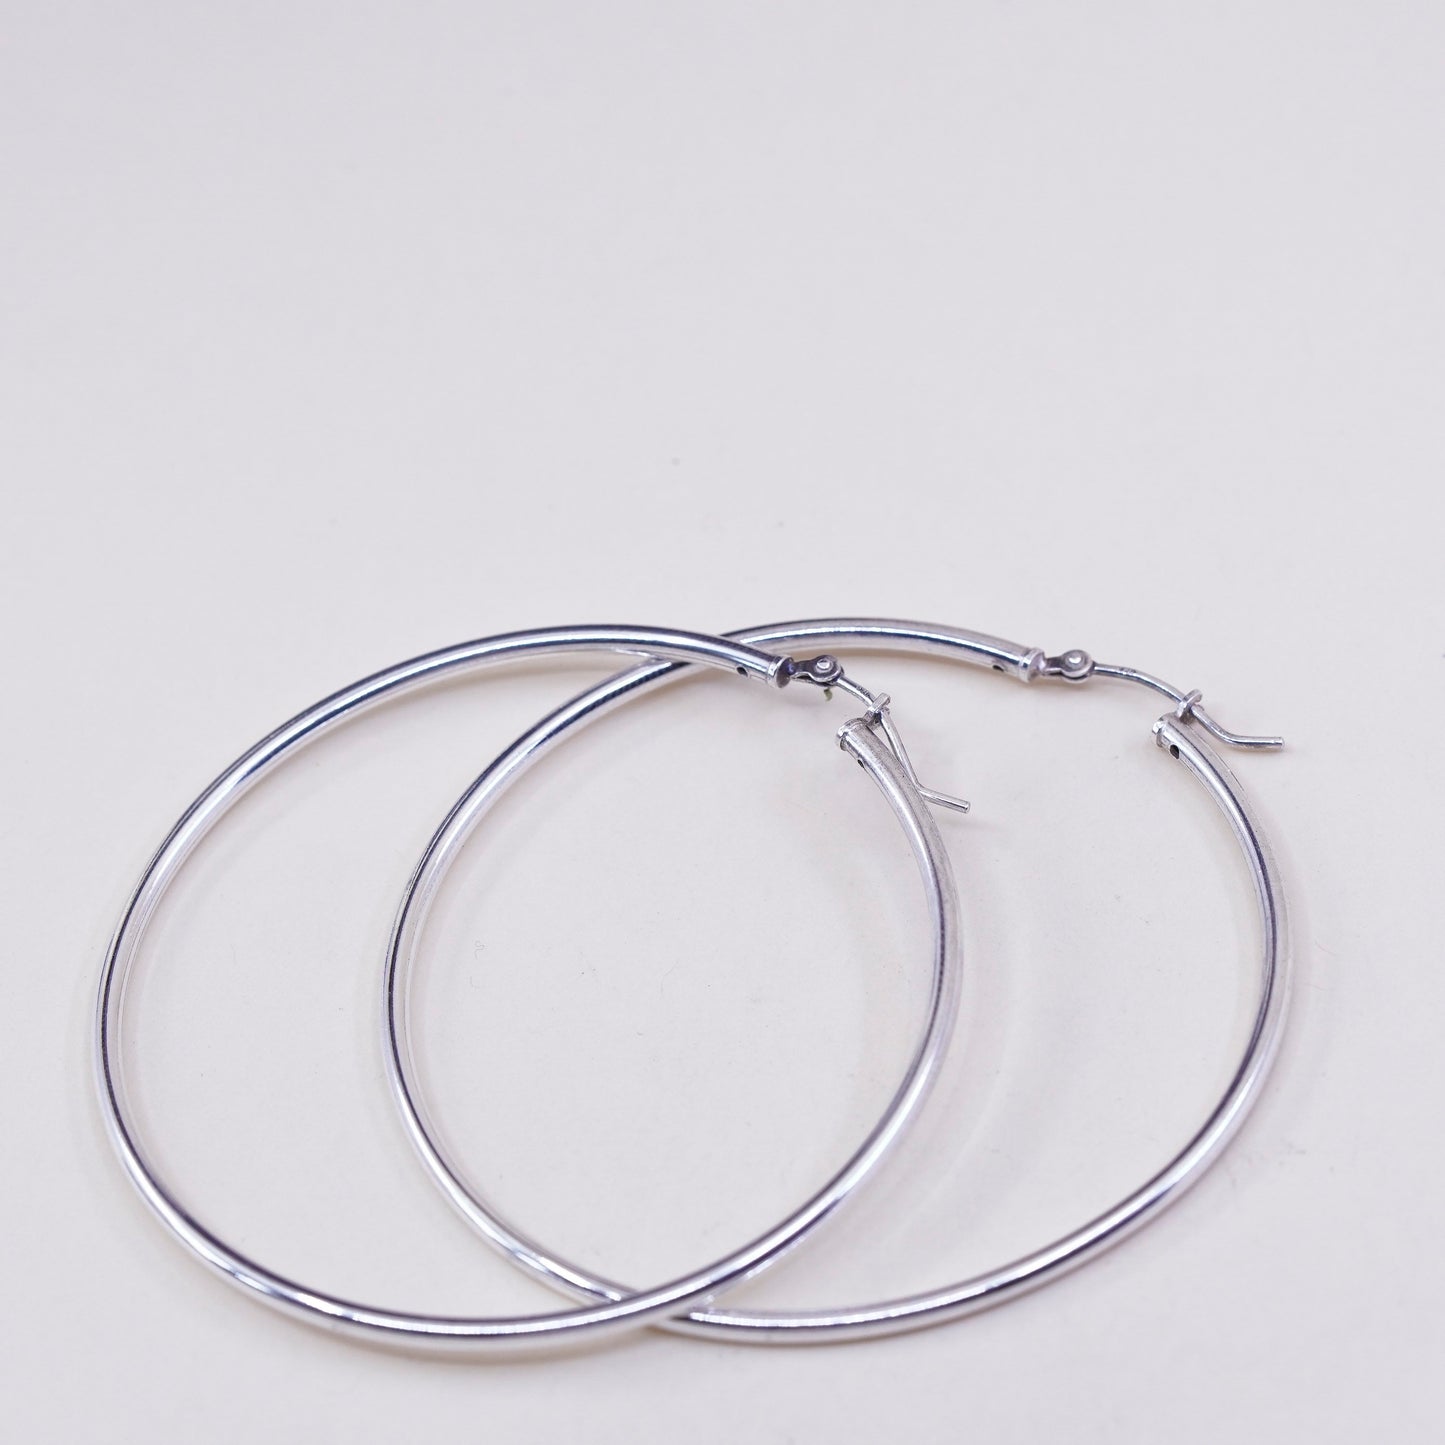 2.25”, vintage ATI sterling silver handmade earrings, 925 huge textured hoops